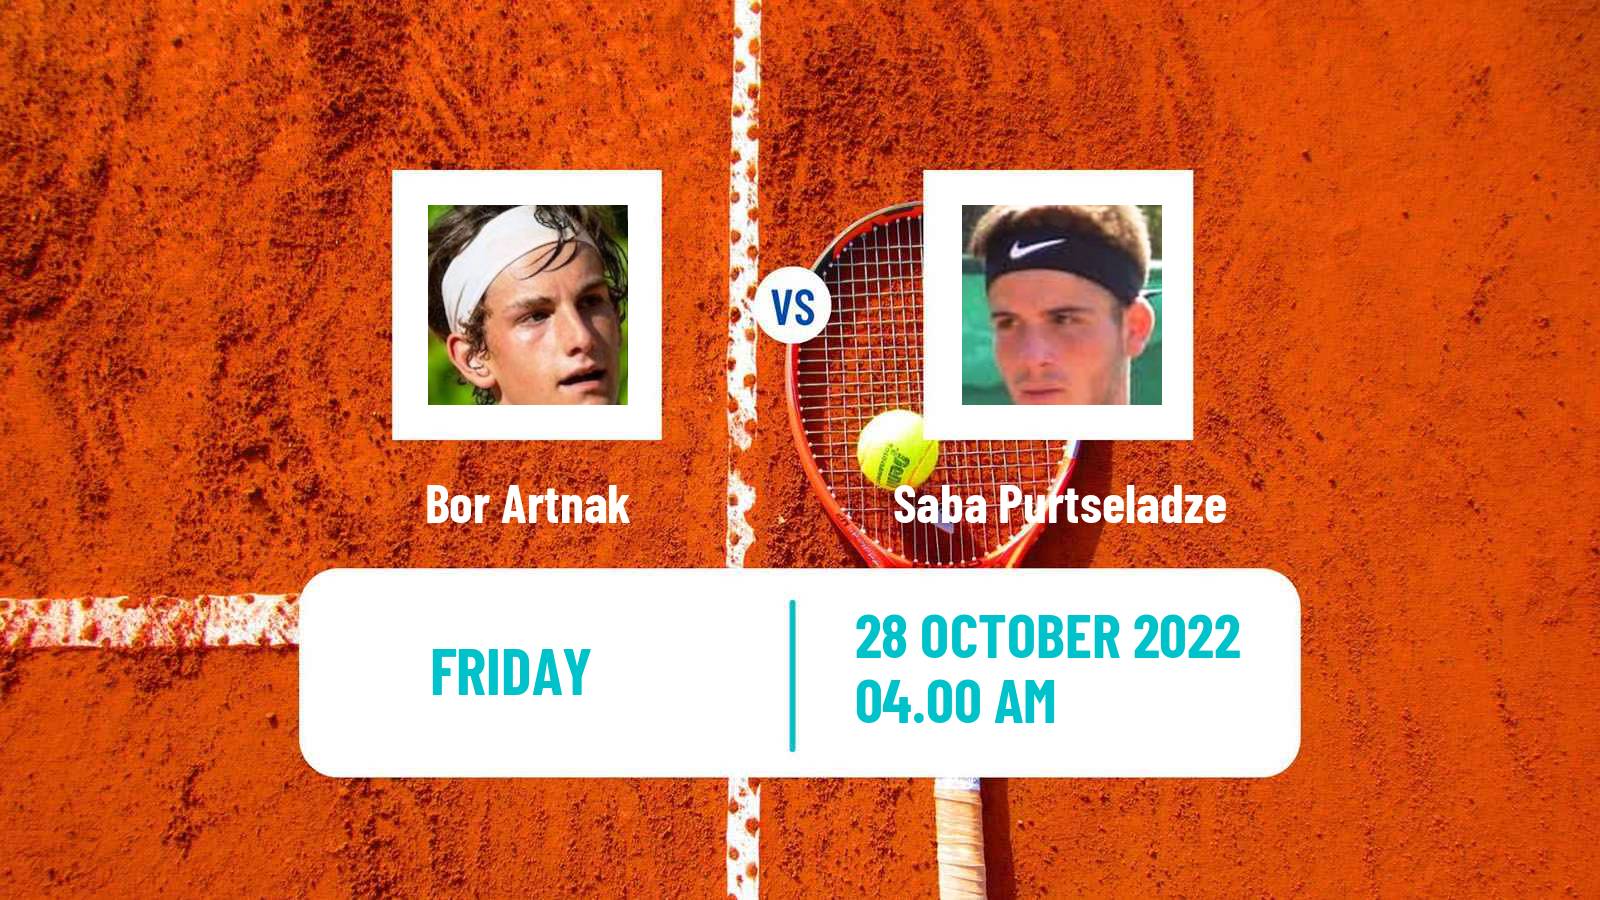 Tennis ITF Tournaments Bor Artnak - Saba Purtseladze